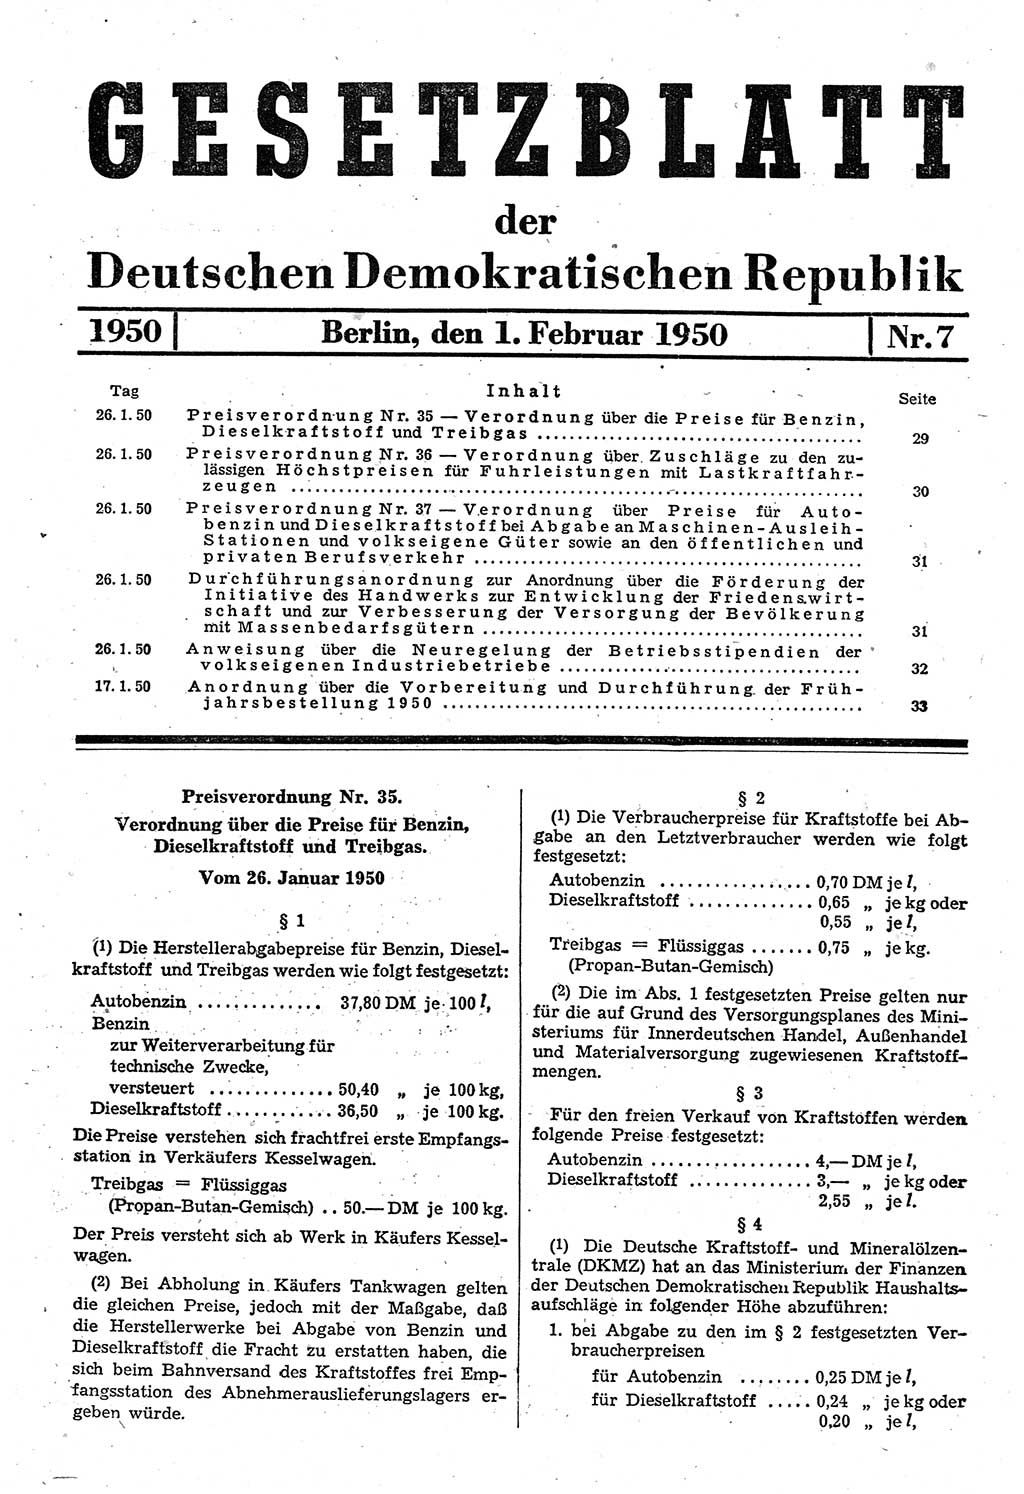 Gesetzblatt (GBl.) der Deutschen Demokratischen Republik (DDR) 1950, Seite 29 (GBl. DDR 1950, S. 29)